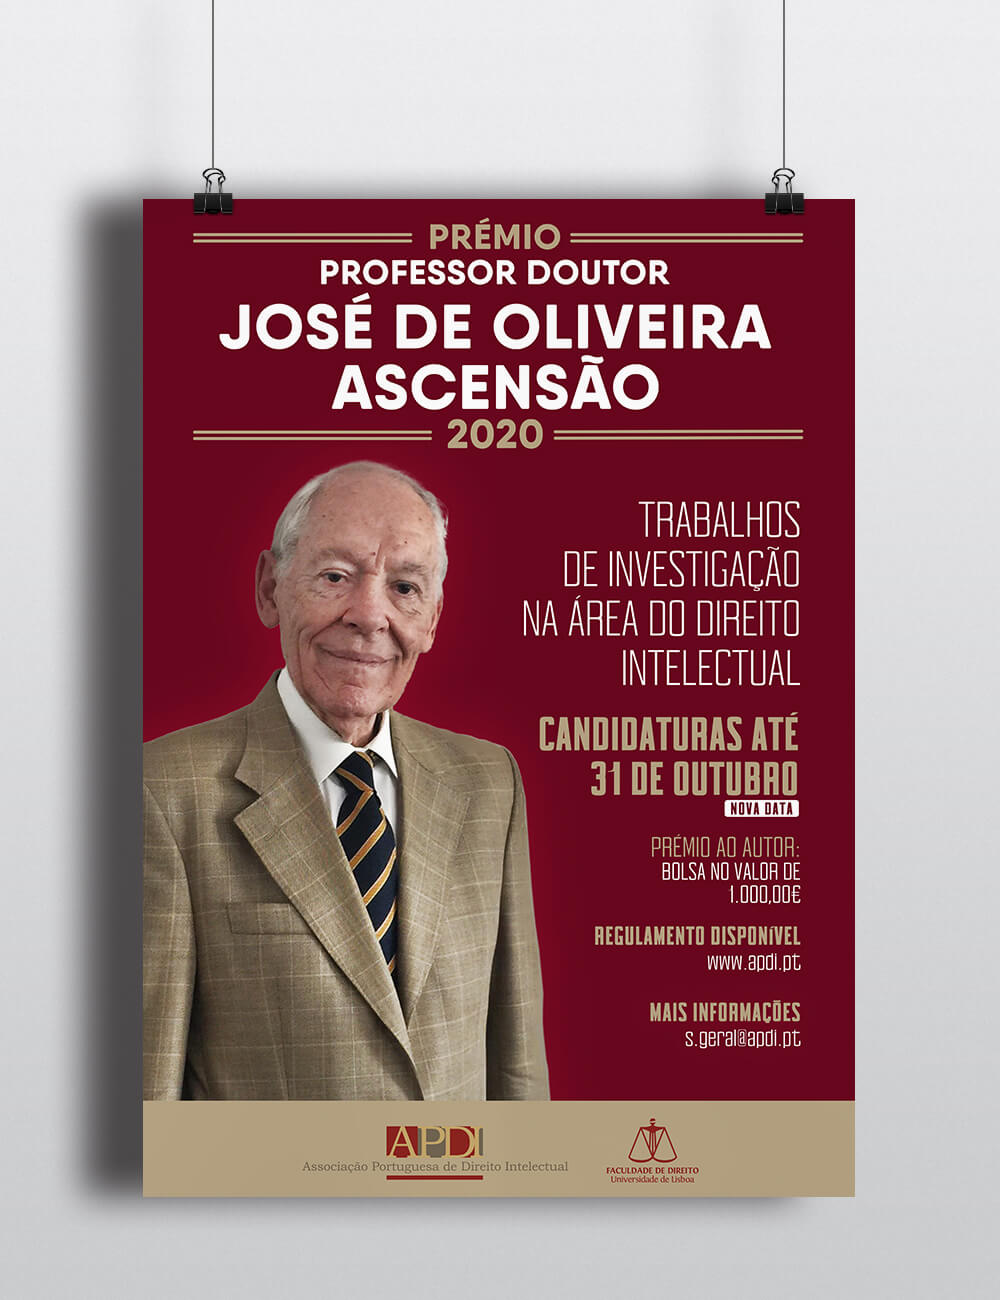 PRÉMIO PROFESSOR DOUTOR JOSÉ DE OLIVEIRA ASCENSÃO 2020